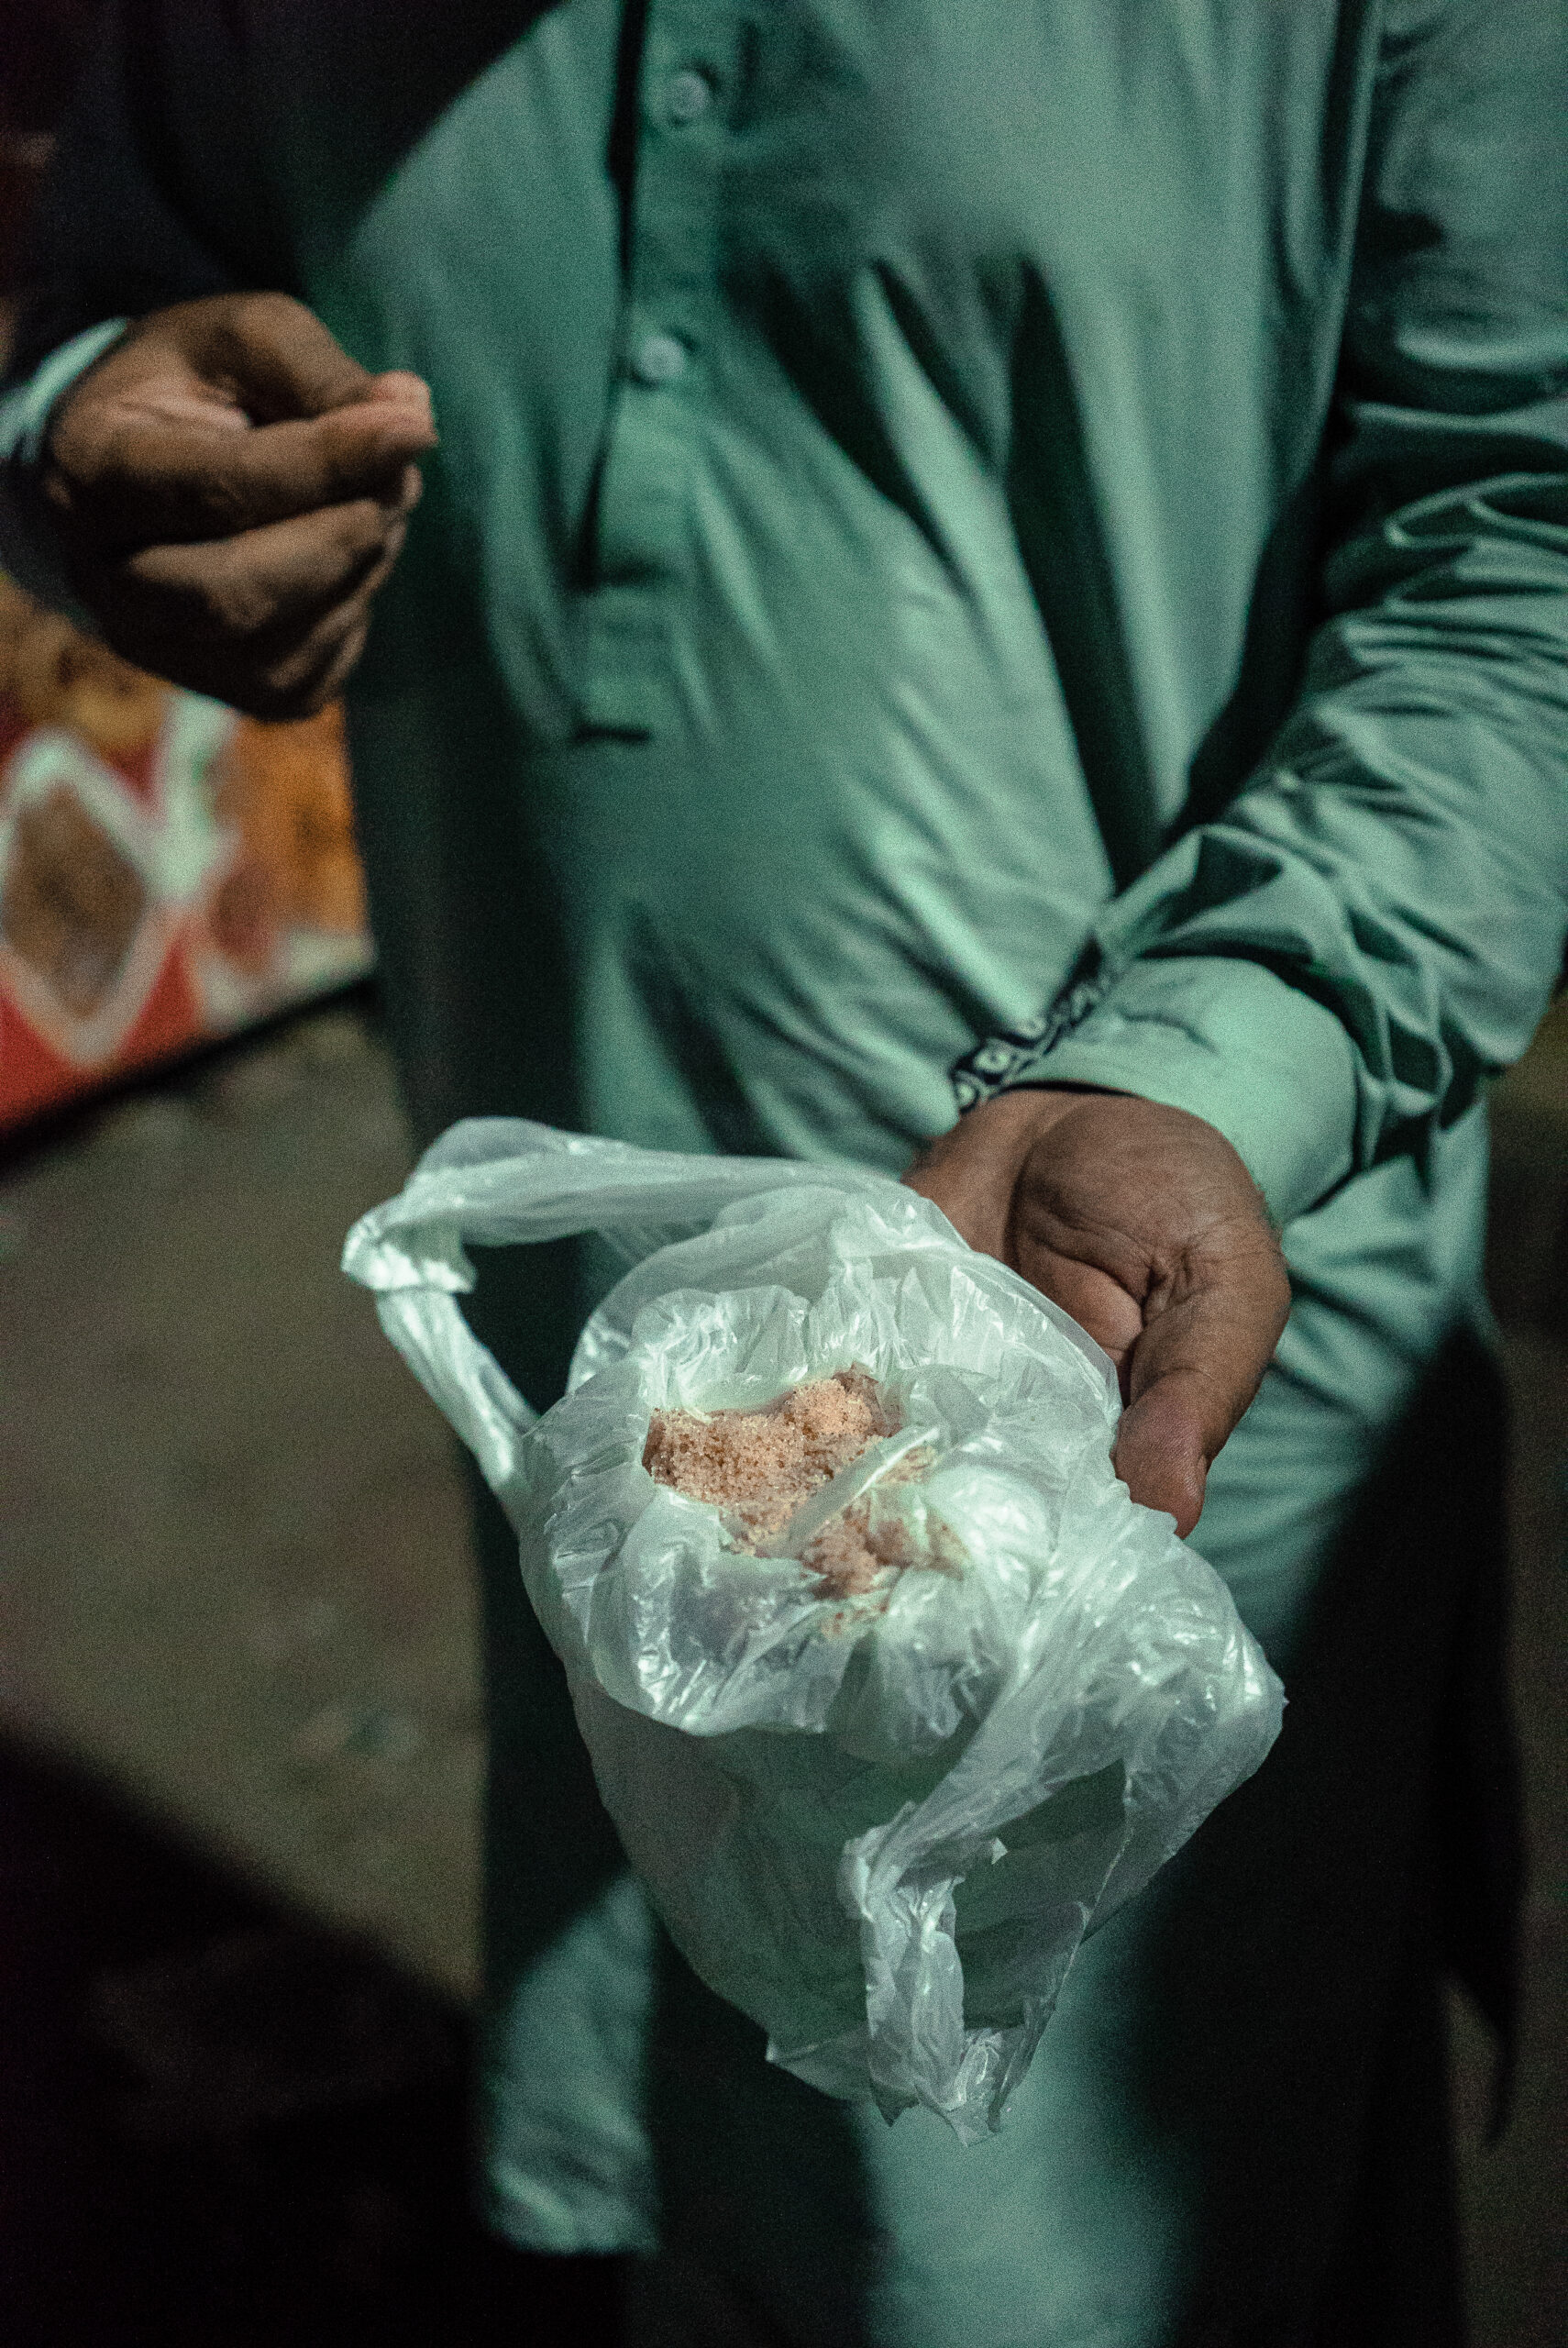 Manifestante compartiendo sal rosa del Himalaya, supuestamente para mitigar los efectos del gas lacrimógeno, Karachi, 9 de mayo. © Laurent Gayer